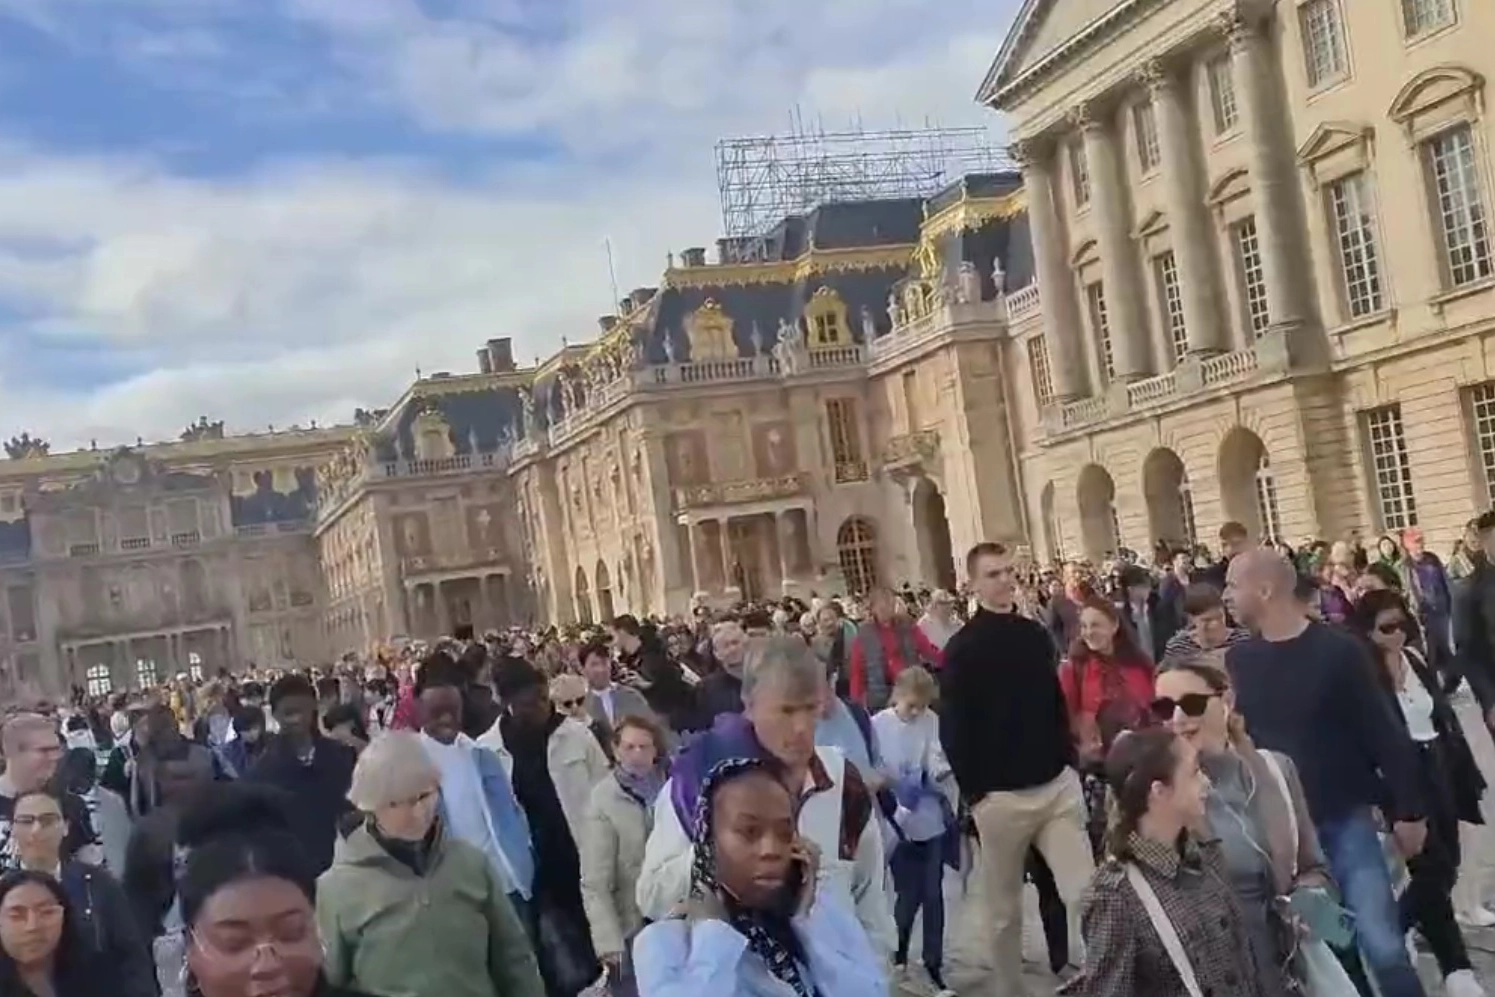 L'evacuazione da Versailles in un video circolato sui social